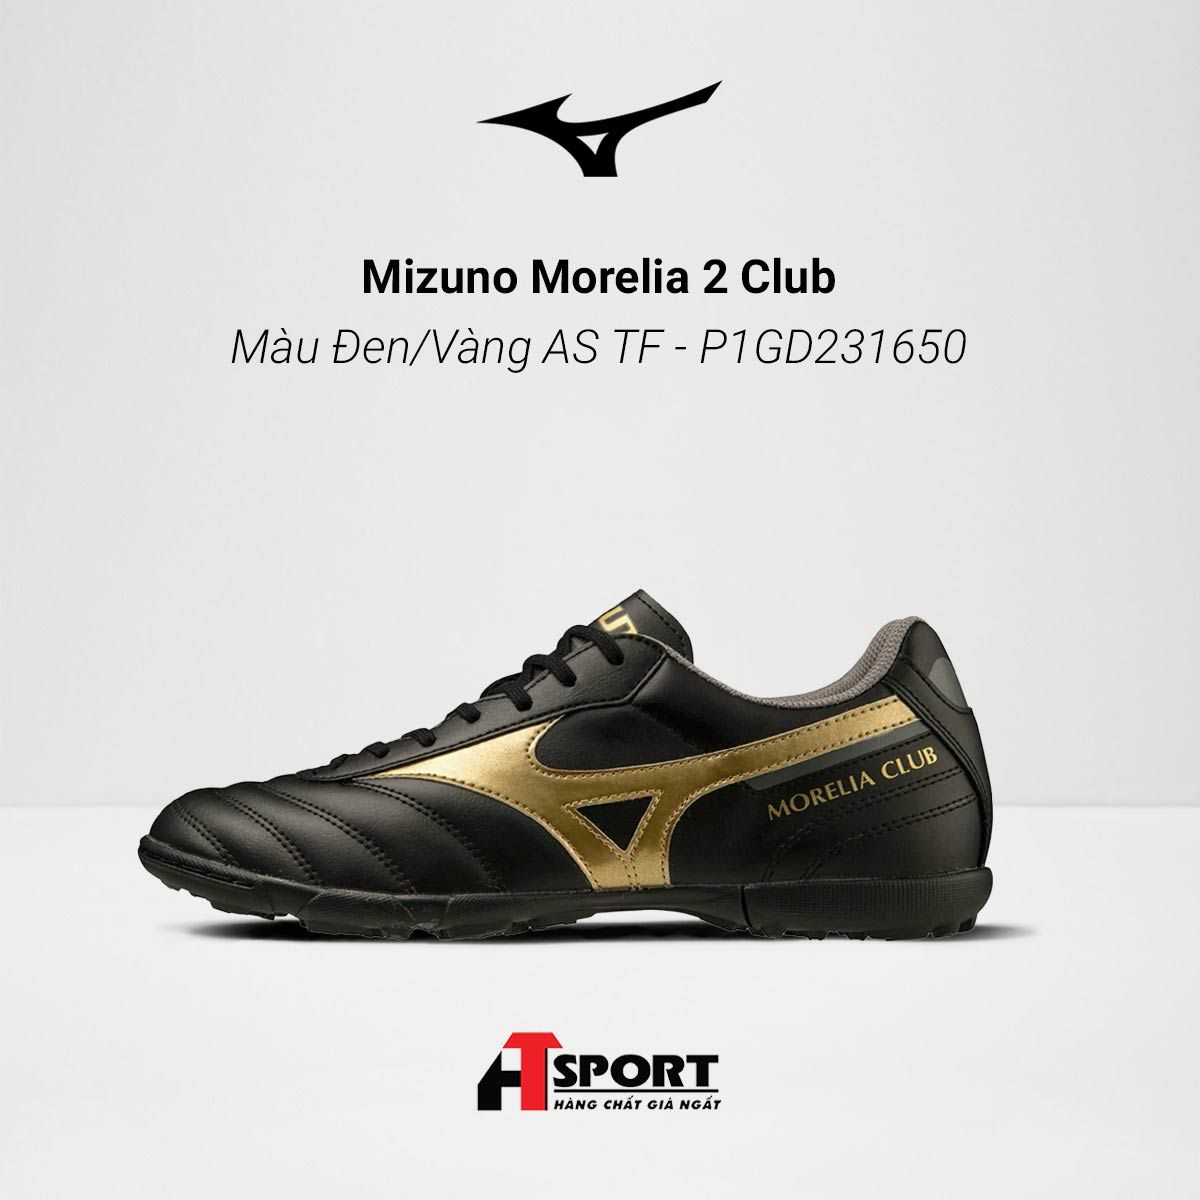  Mizuno Morelia 2 Club - Màu Đen/Vàng AS TF - P1GD231650 